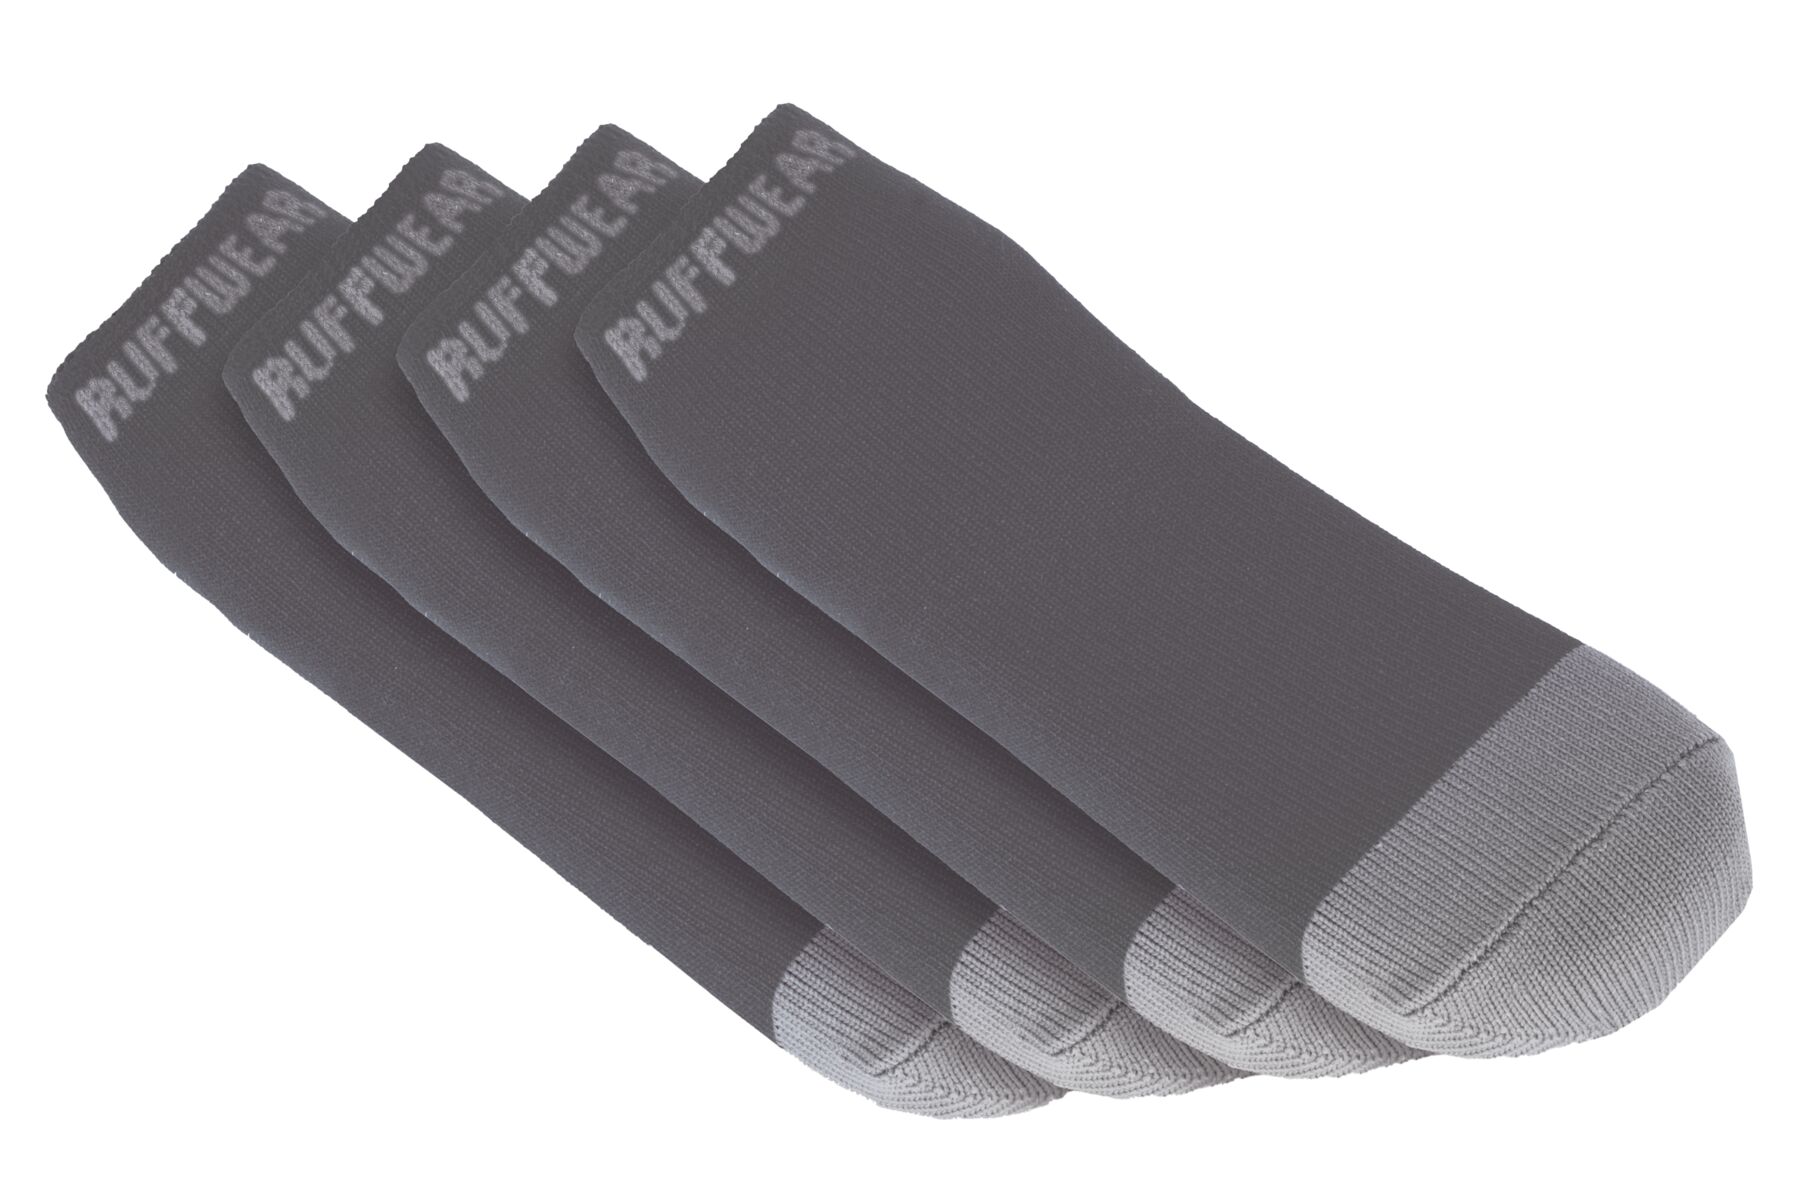 Chausettes pour chien bark'n boot™ comfortable et séchage rapide, lot de quatre. Couleur: twilight gray (gris), taille: xs (38-44mm)